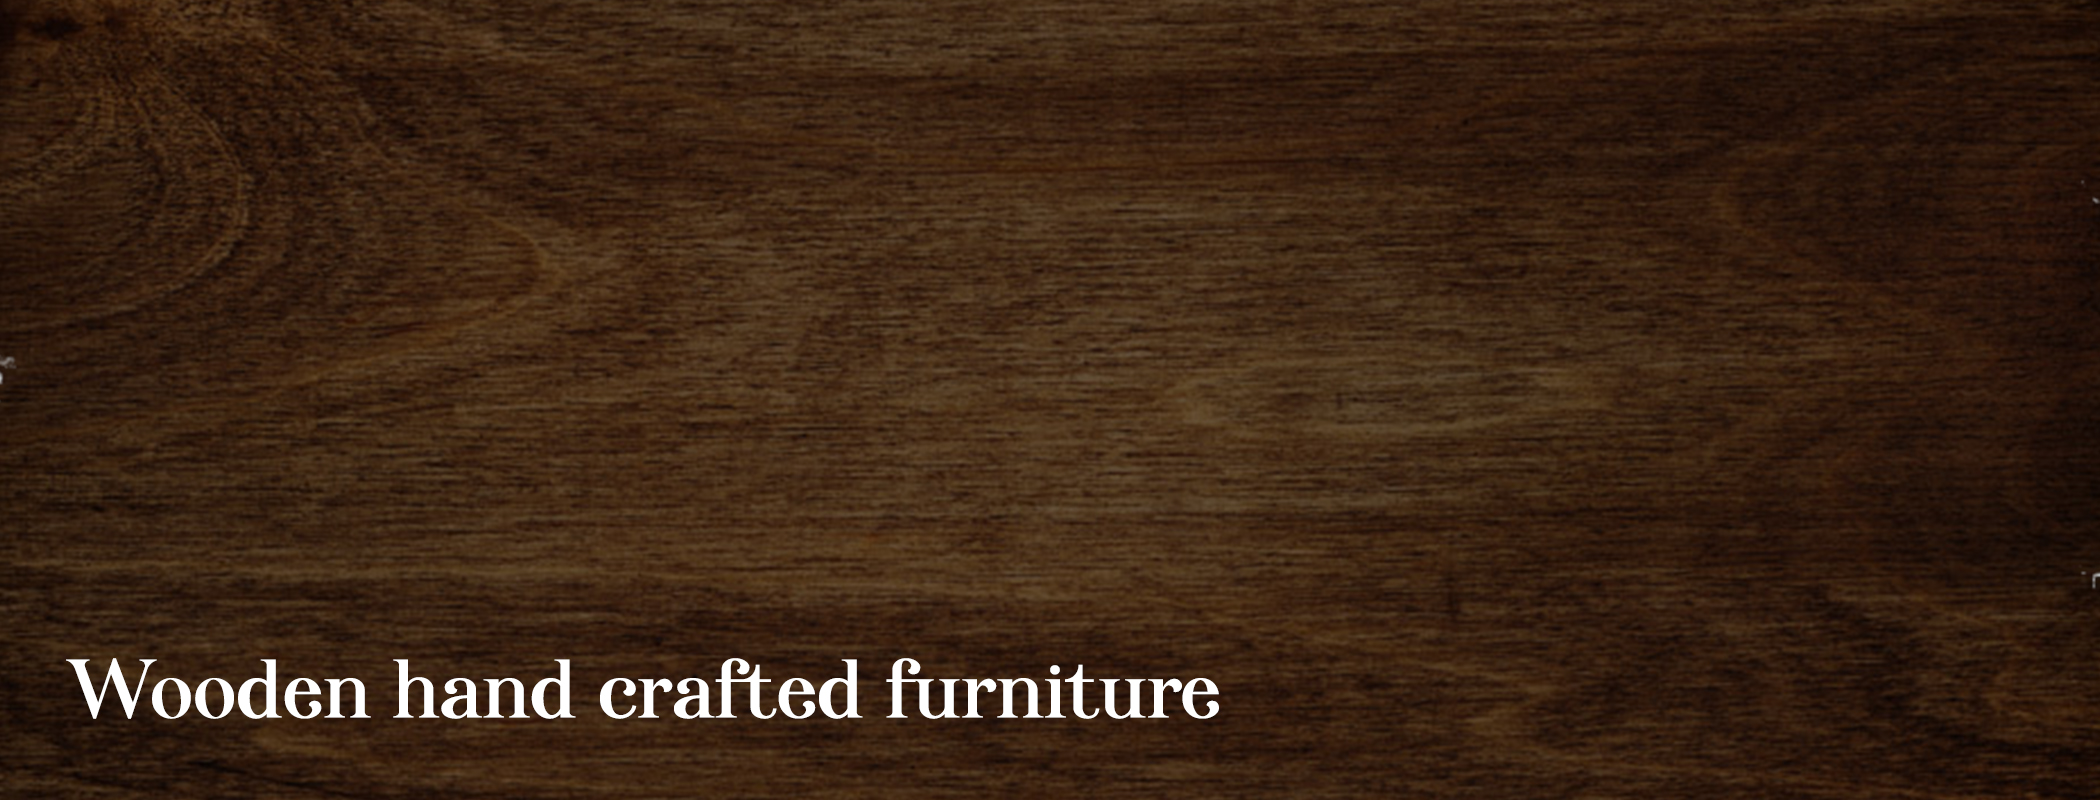 Best Buy wooden handicraft furniture | Sushilcraft..